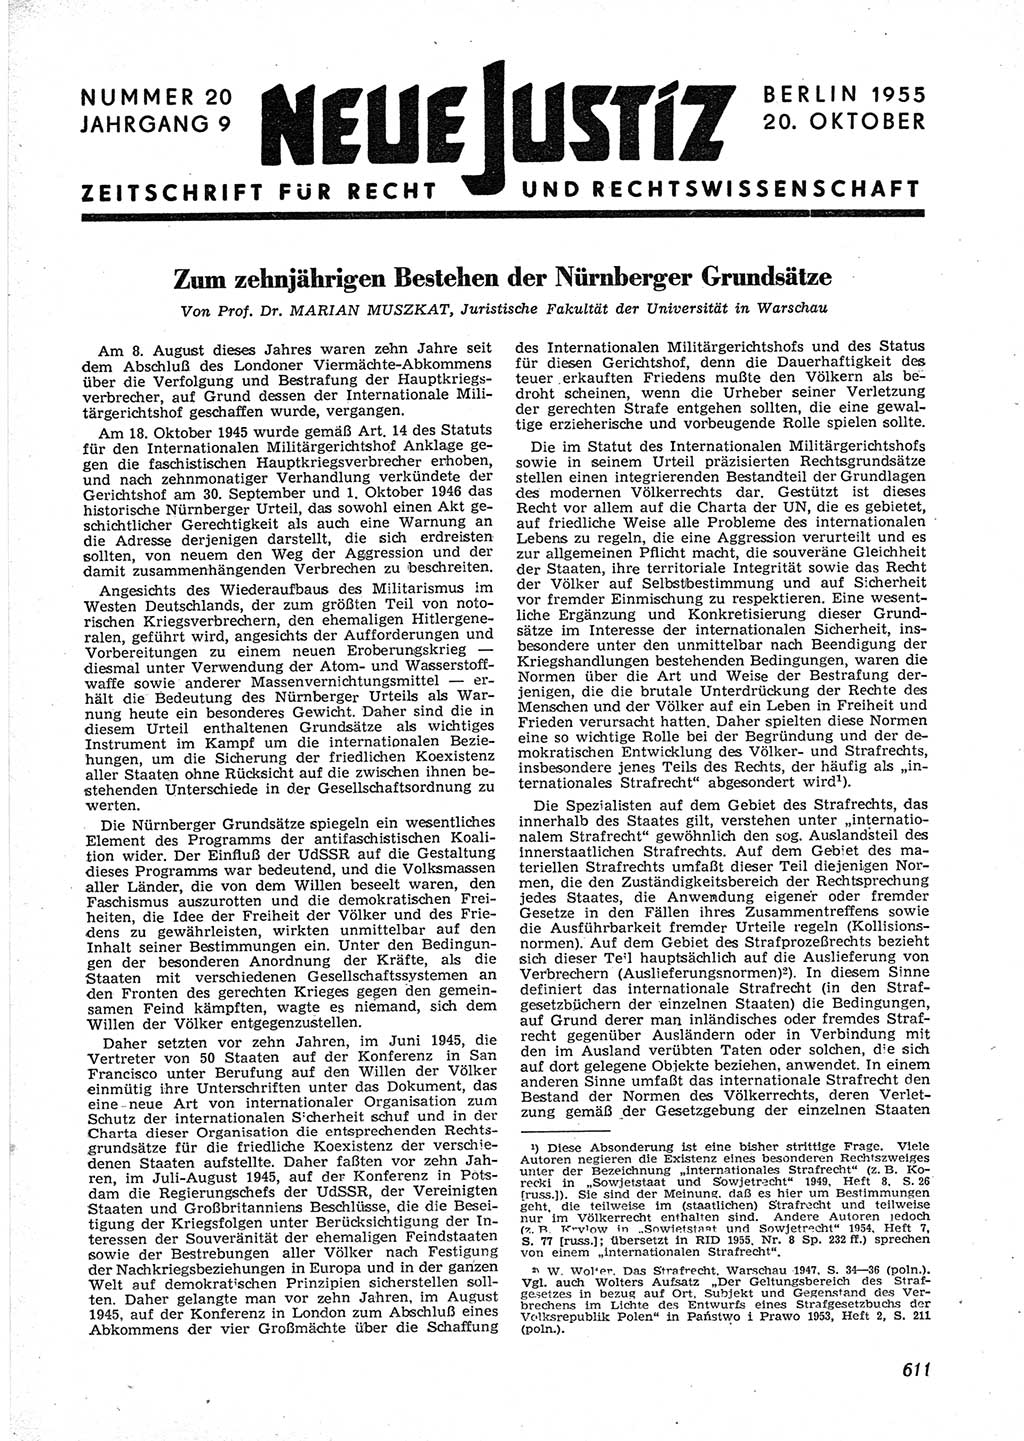 Neue Justiz (NJ), Zeitschrift für Recht und Rechtswissenschaft [Deutsche Demokratische Republik (DDR)], 9. Jahrgang 1955, Seite 611 (NJ DDR 1955, S. 611)